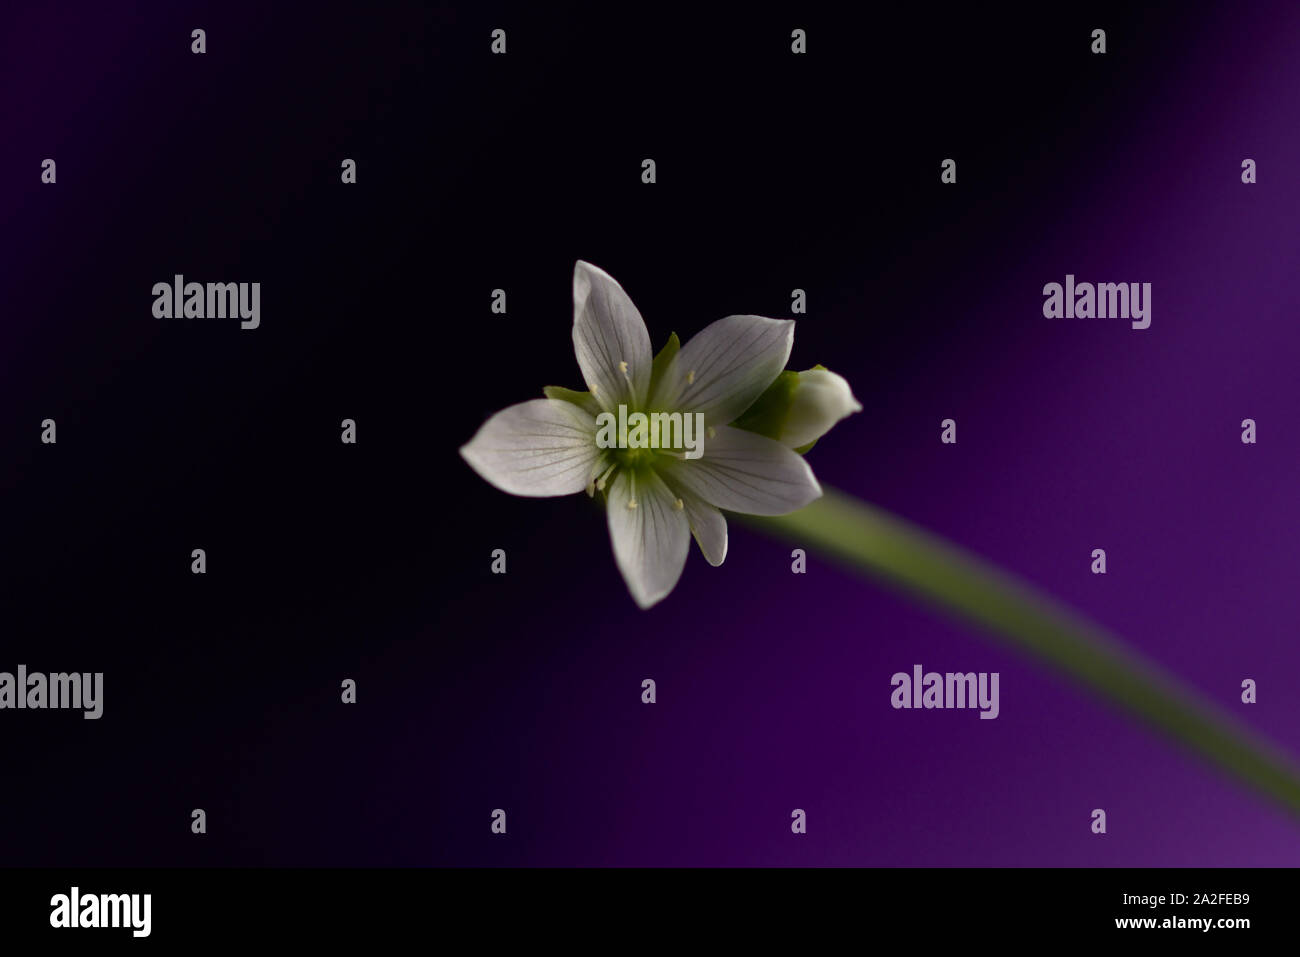 White Venus Flytrap Flower with Purple to Dark Purple Gradient Background Stock Photo